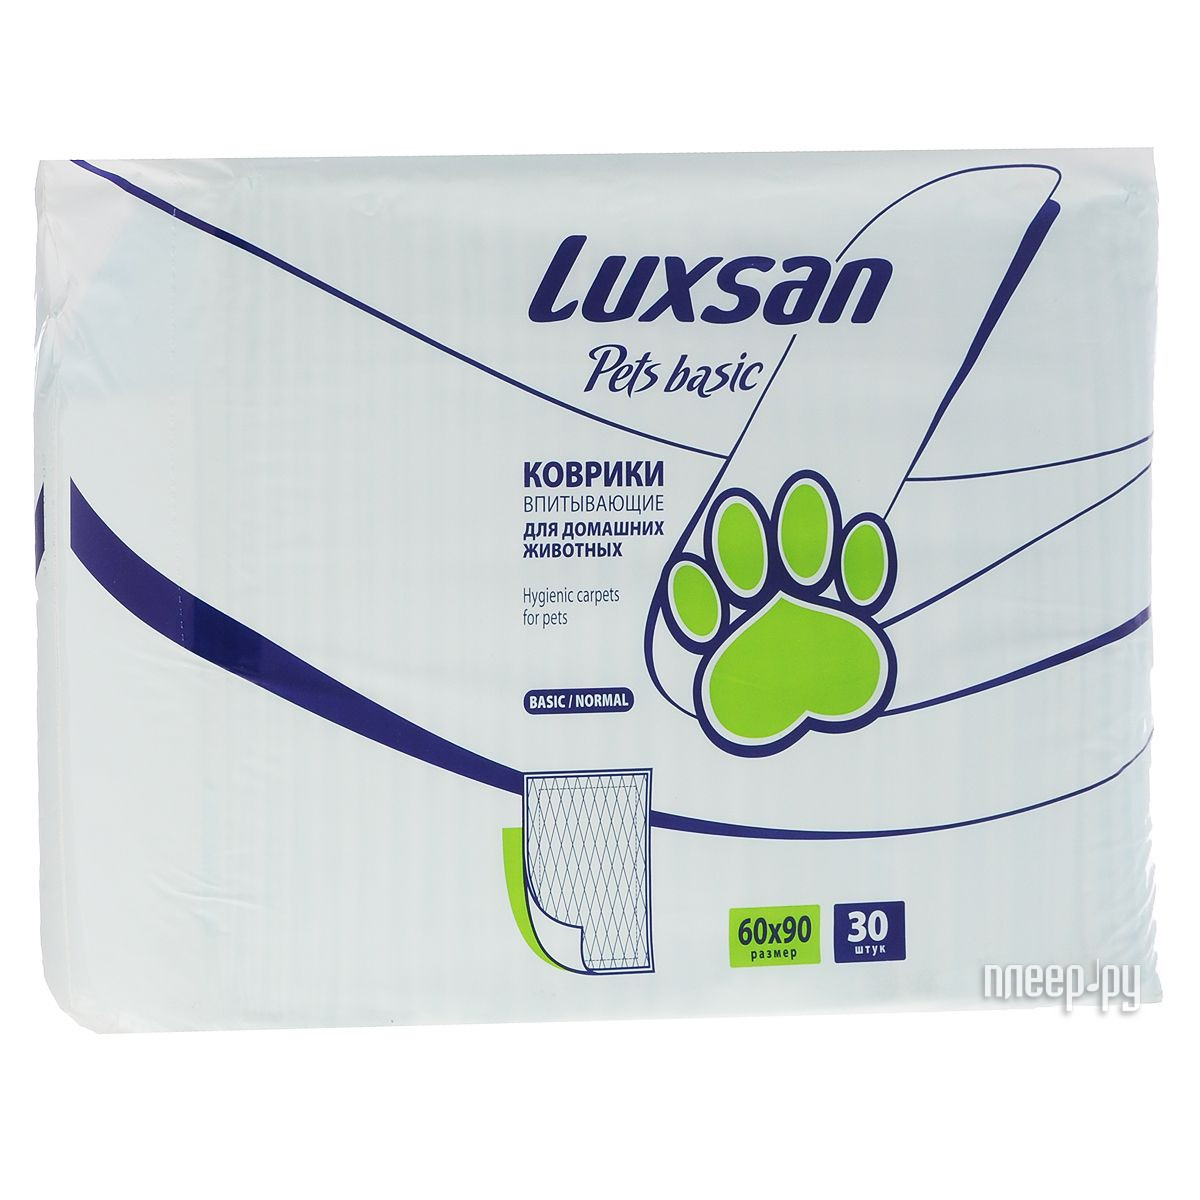  Luxsan Pets Basic 30 60x90cm 30 3690301 